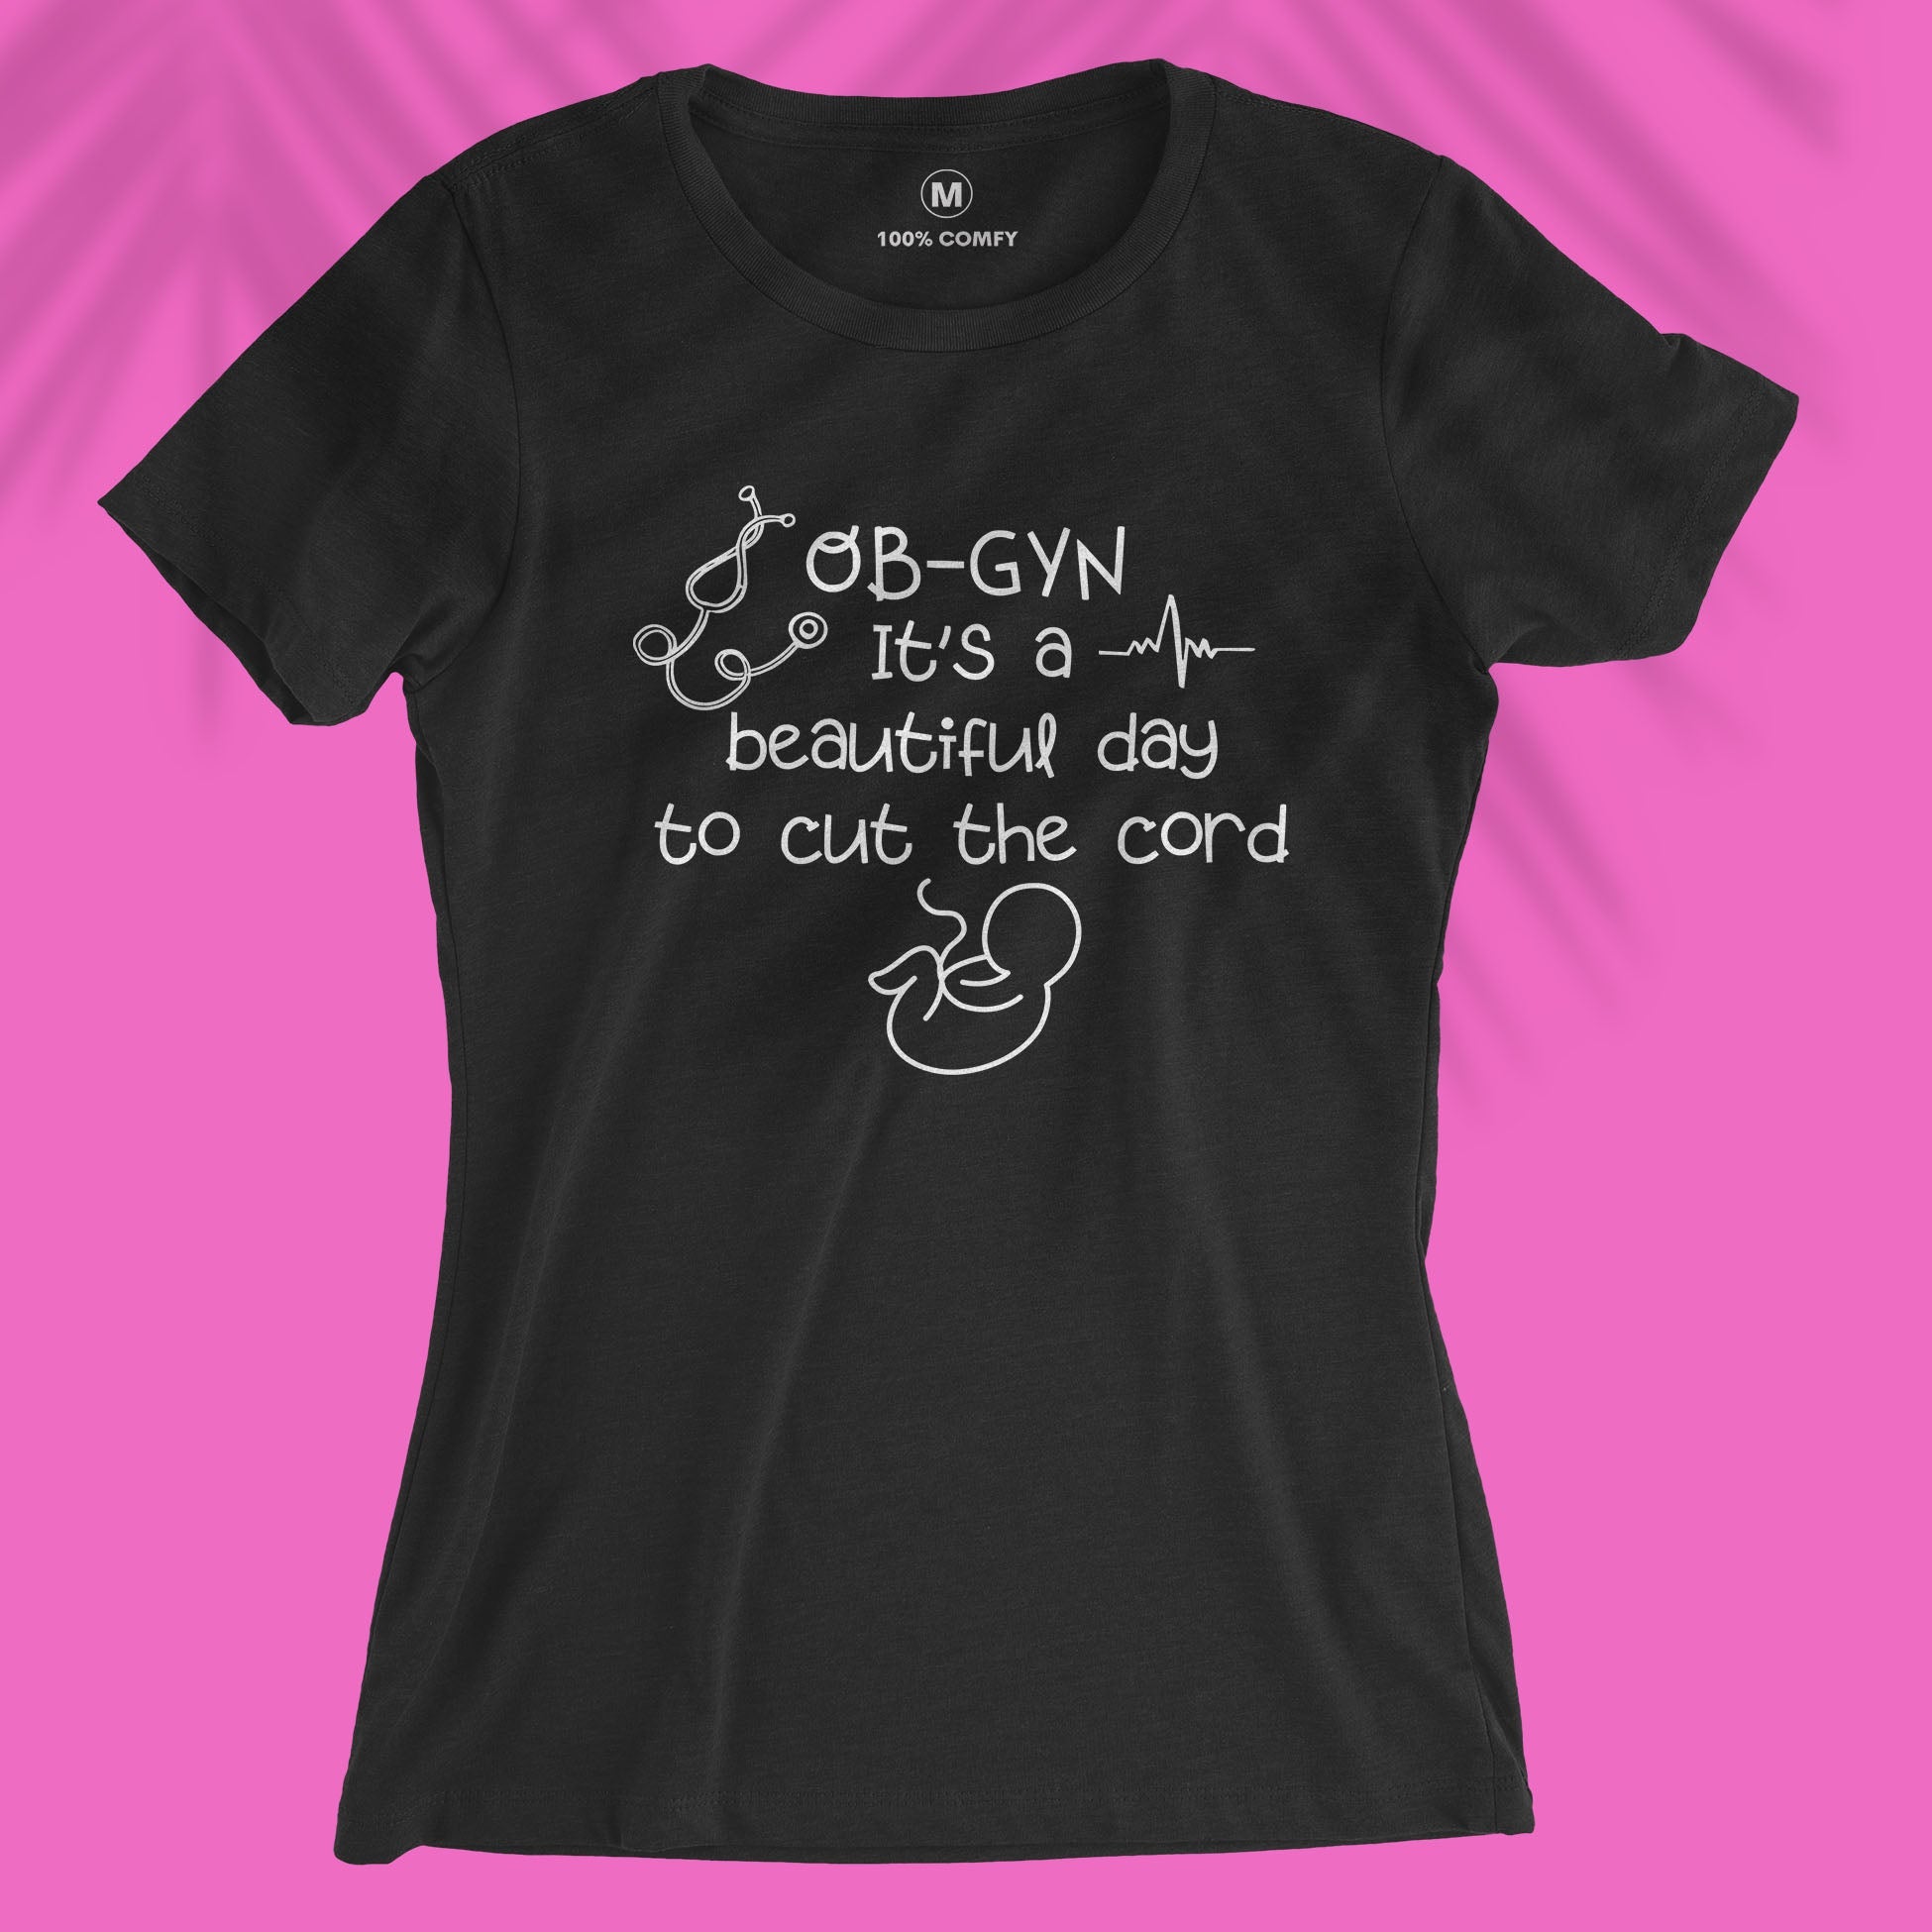 Cut the cord - Women T-shirt